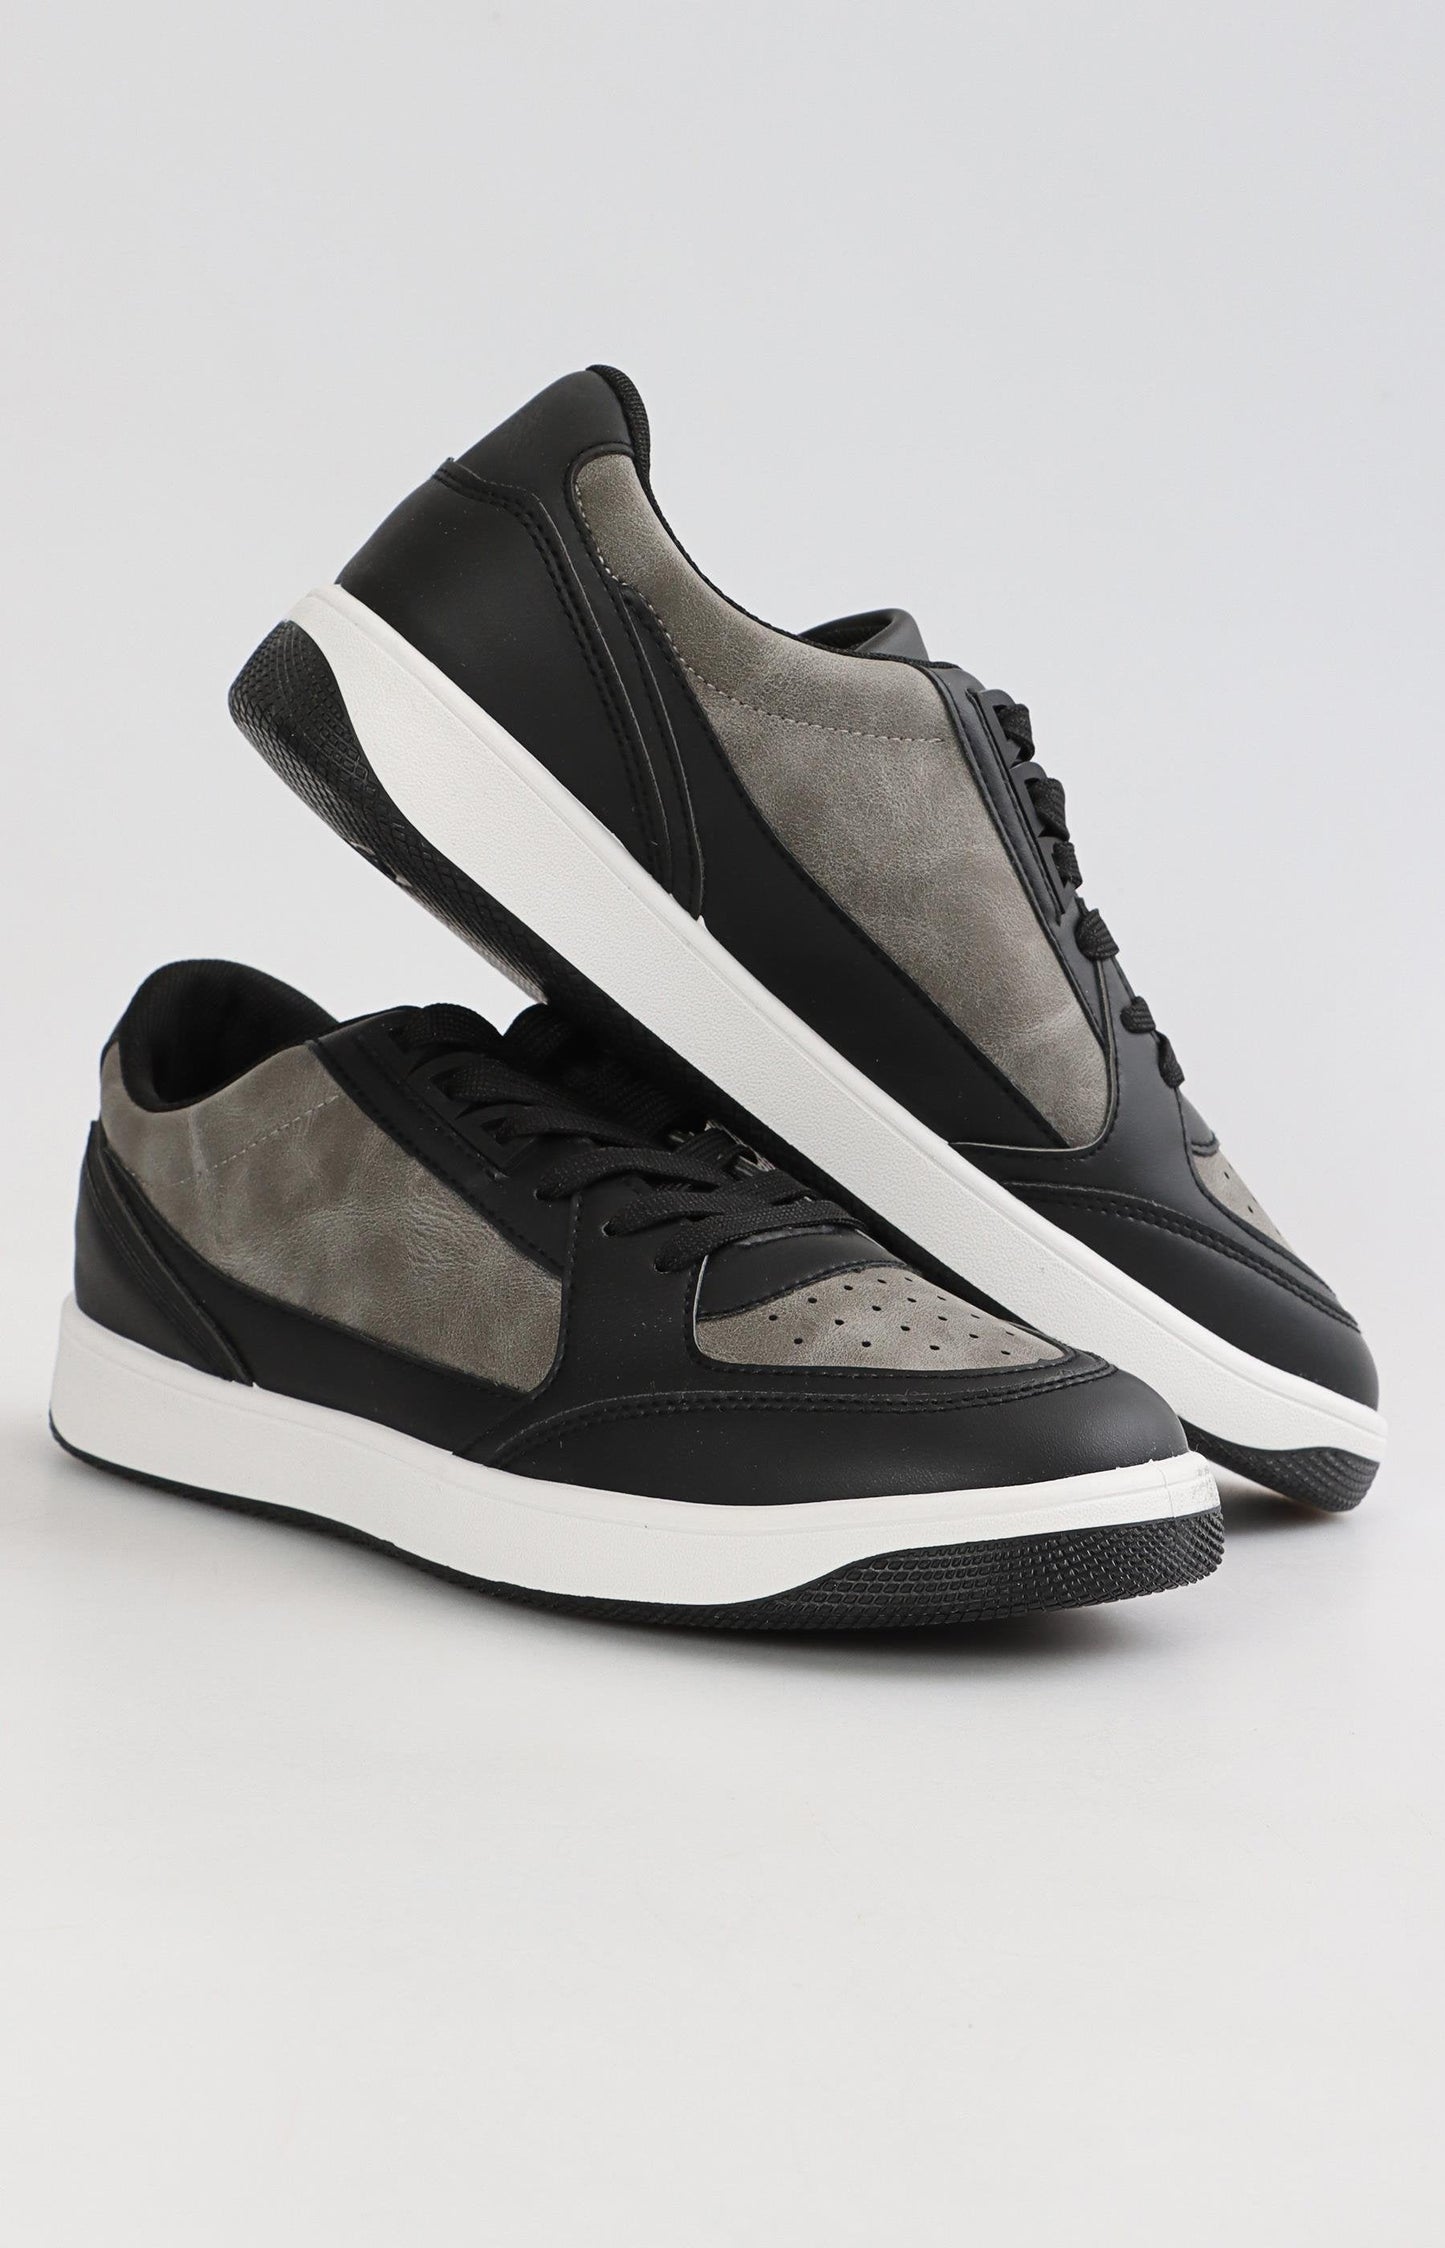 Mens Low Cut Casual Sneakers - Grey-Black